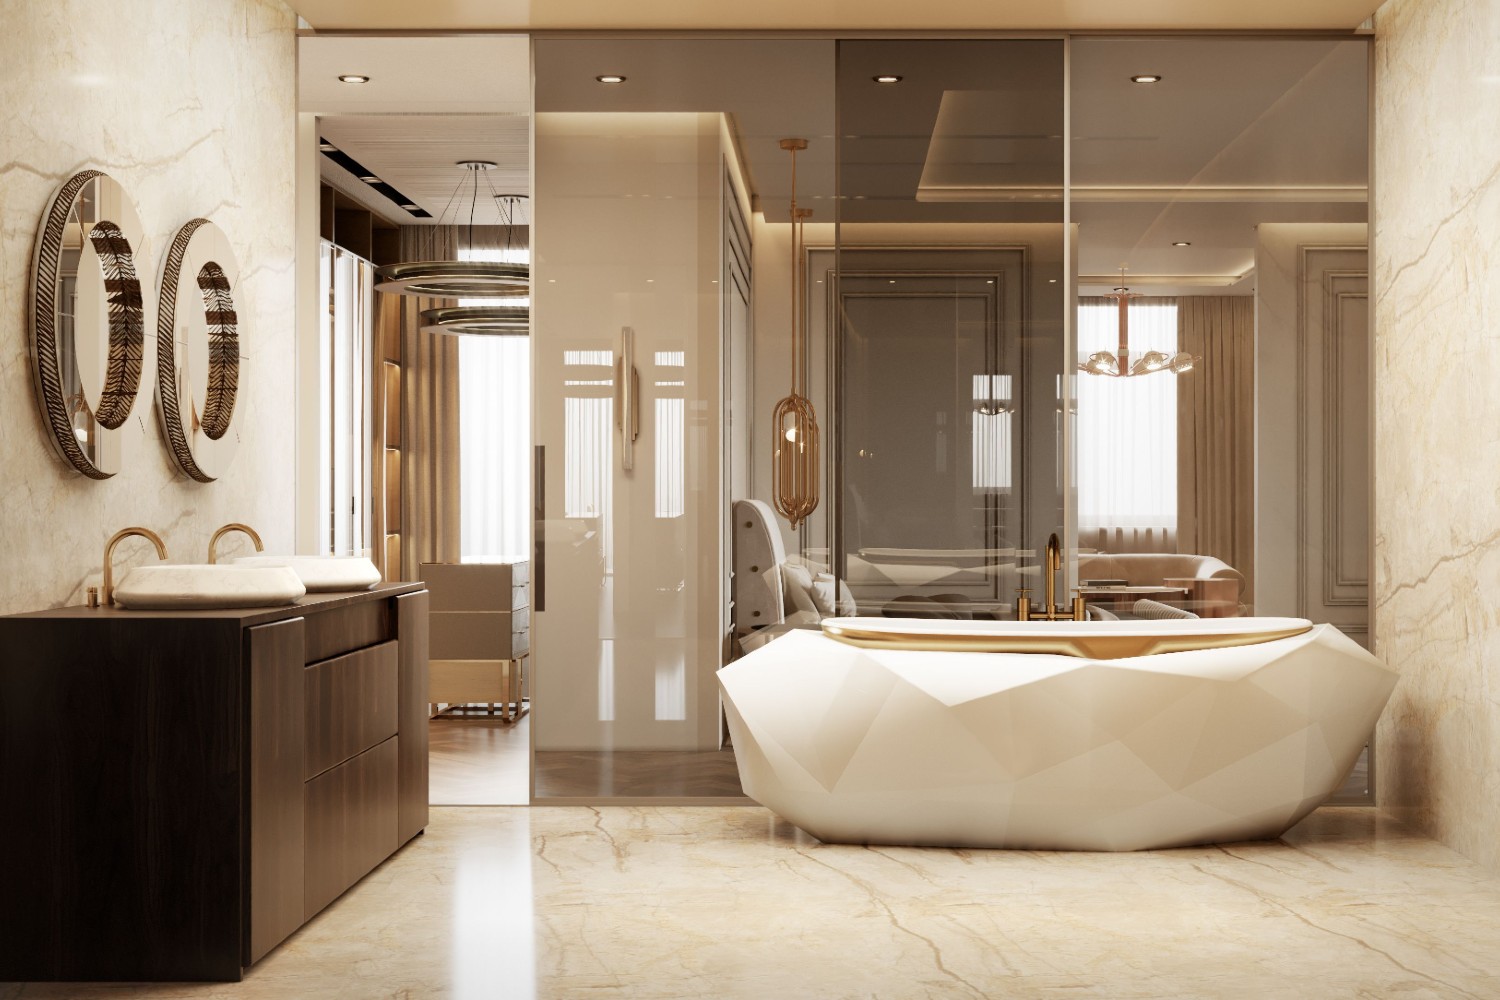 Grey bathroom interior - Interior Design Ideas